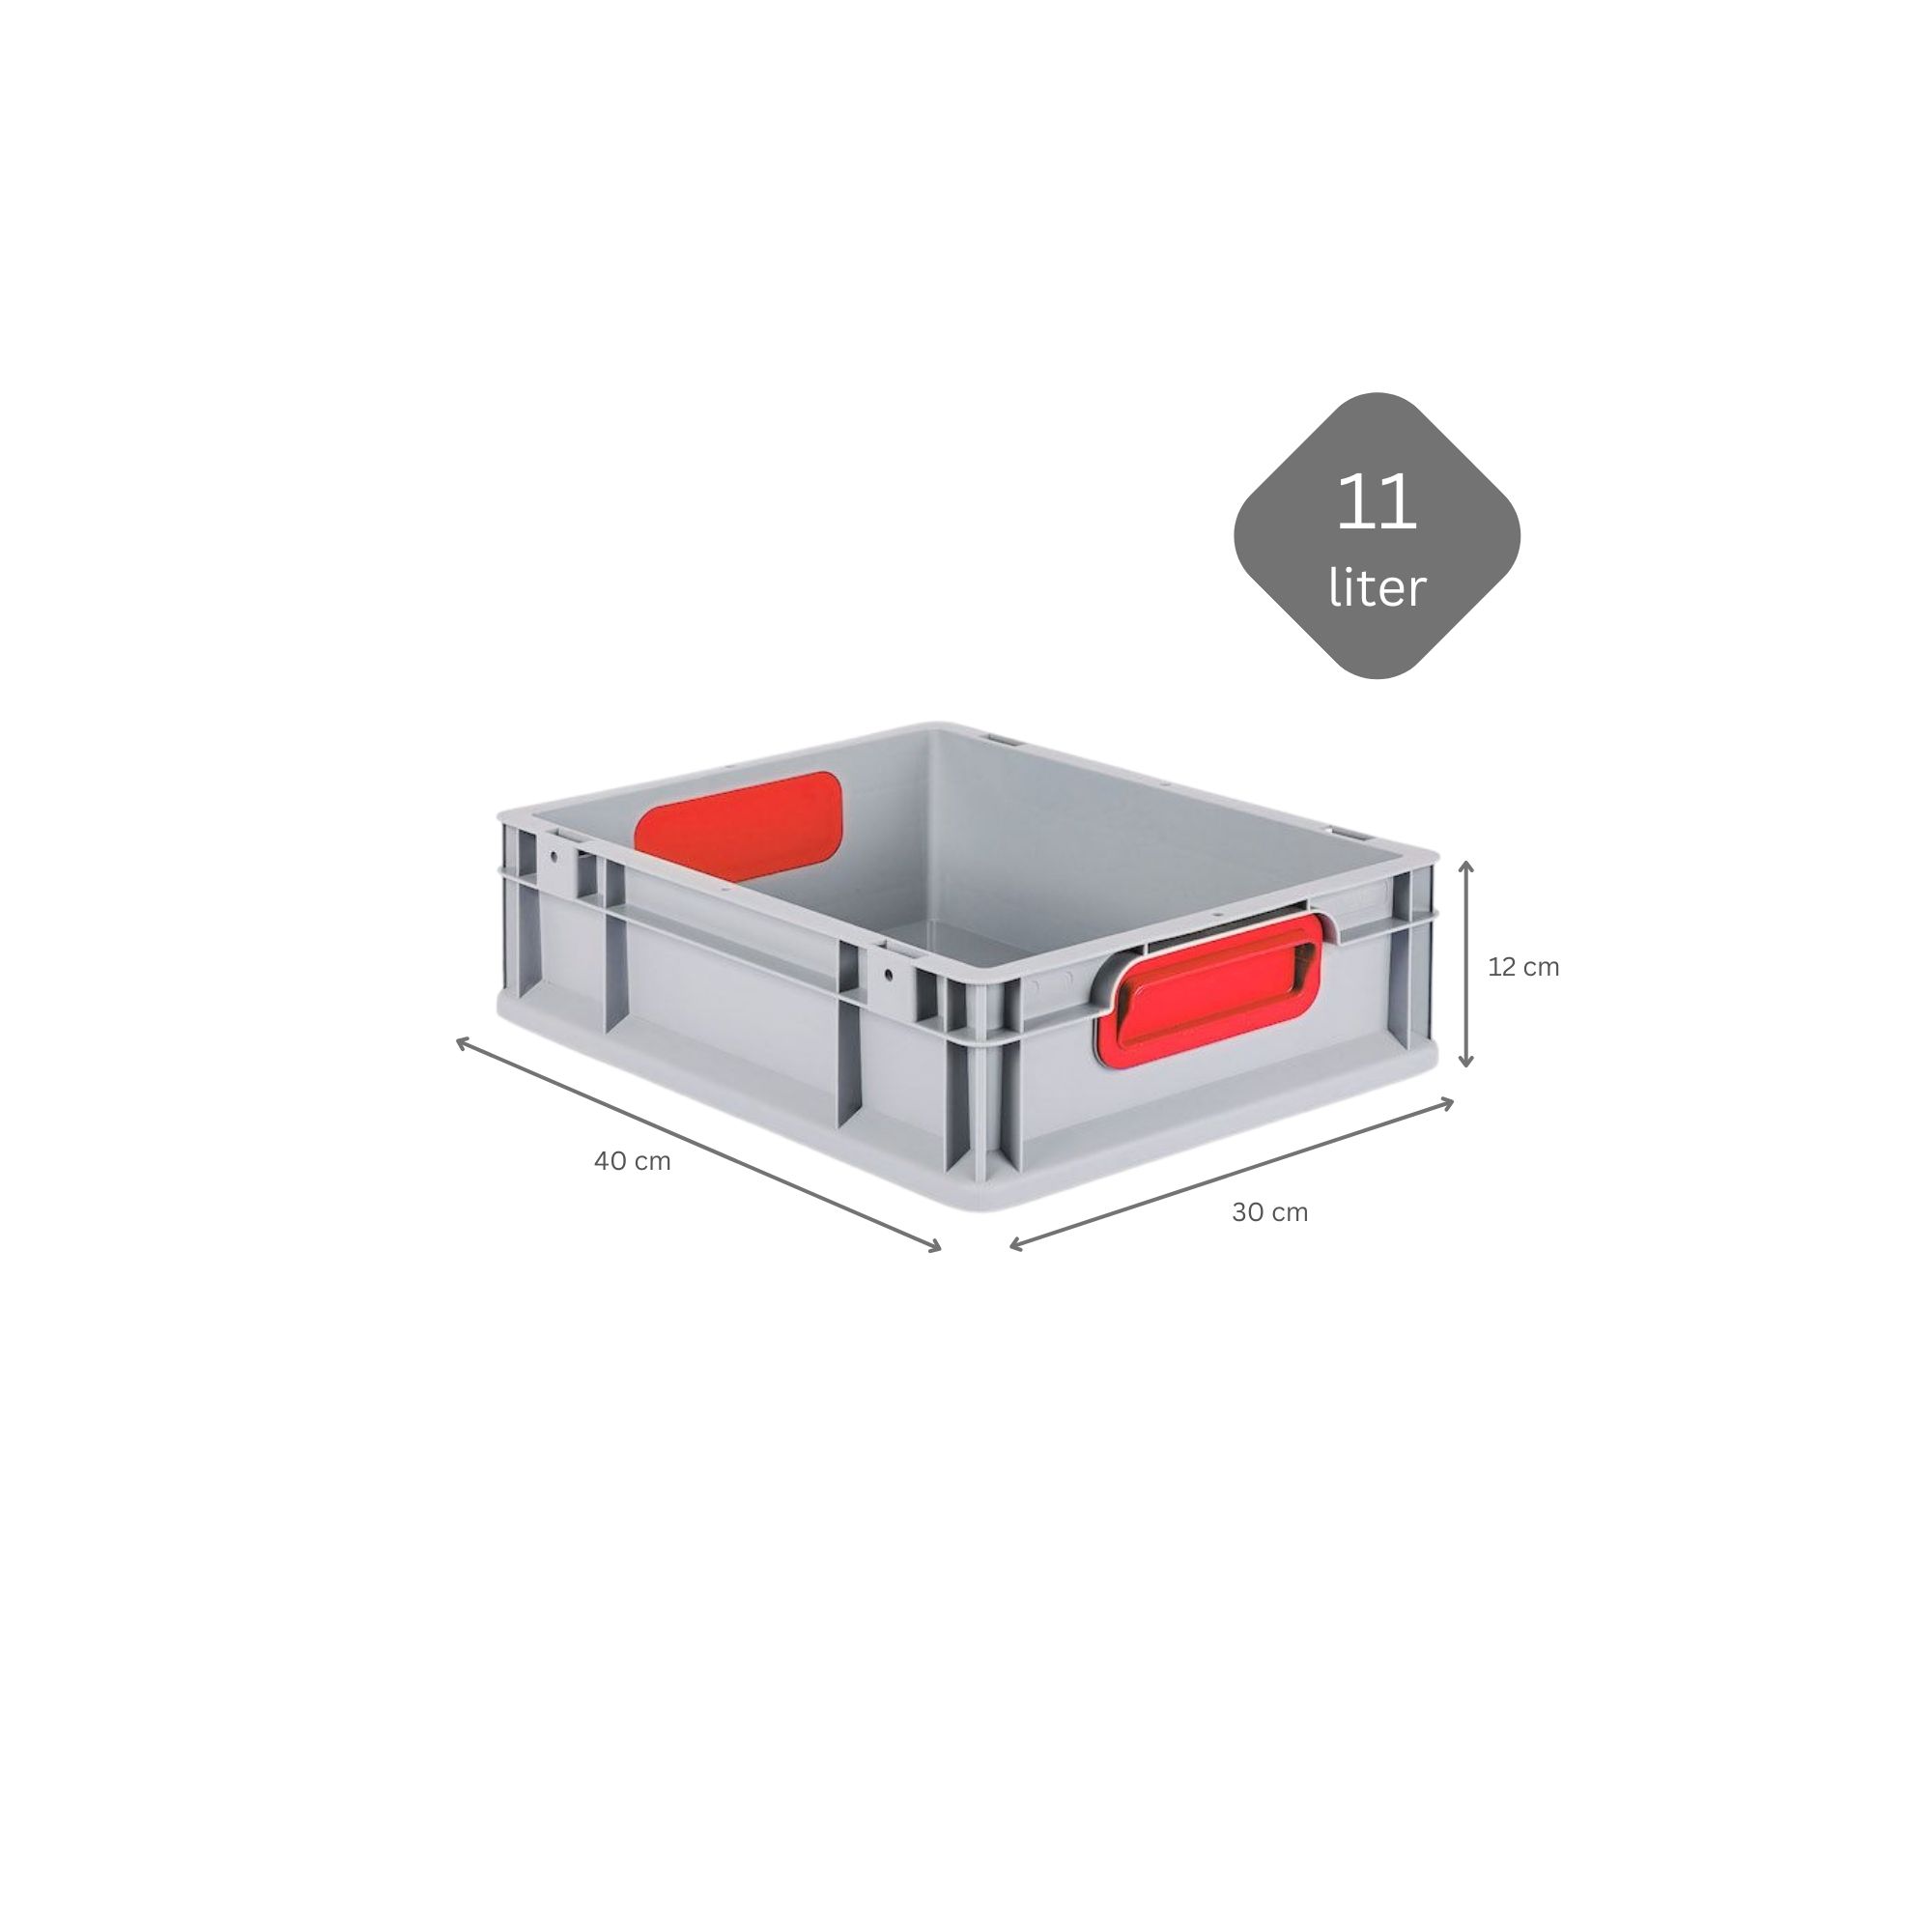 SparSet 5x Eurobox NextGen Color mit Auflagedeckel und Schiebeschnappverschlüsse | HxBxT 12x30x40cm | 11 Liter | Griffe rot geschlossen | Glatter Boden | Eurobehälter, Transportbox, Transportbehälter, Stapelbehälter